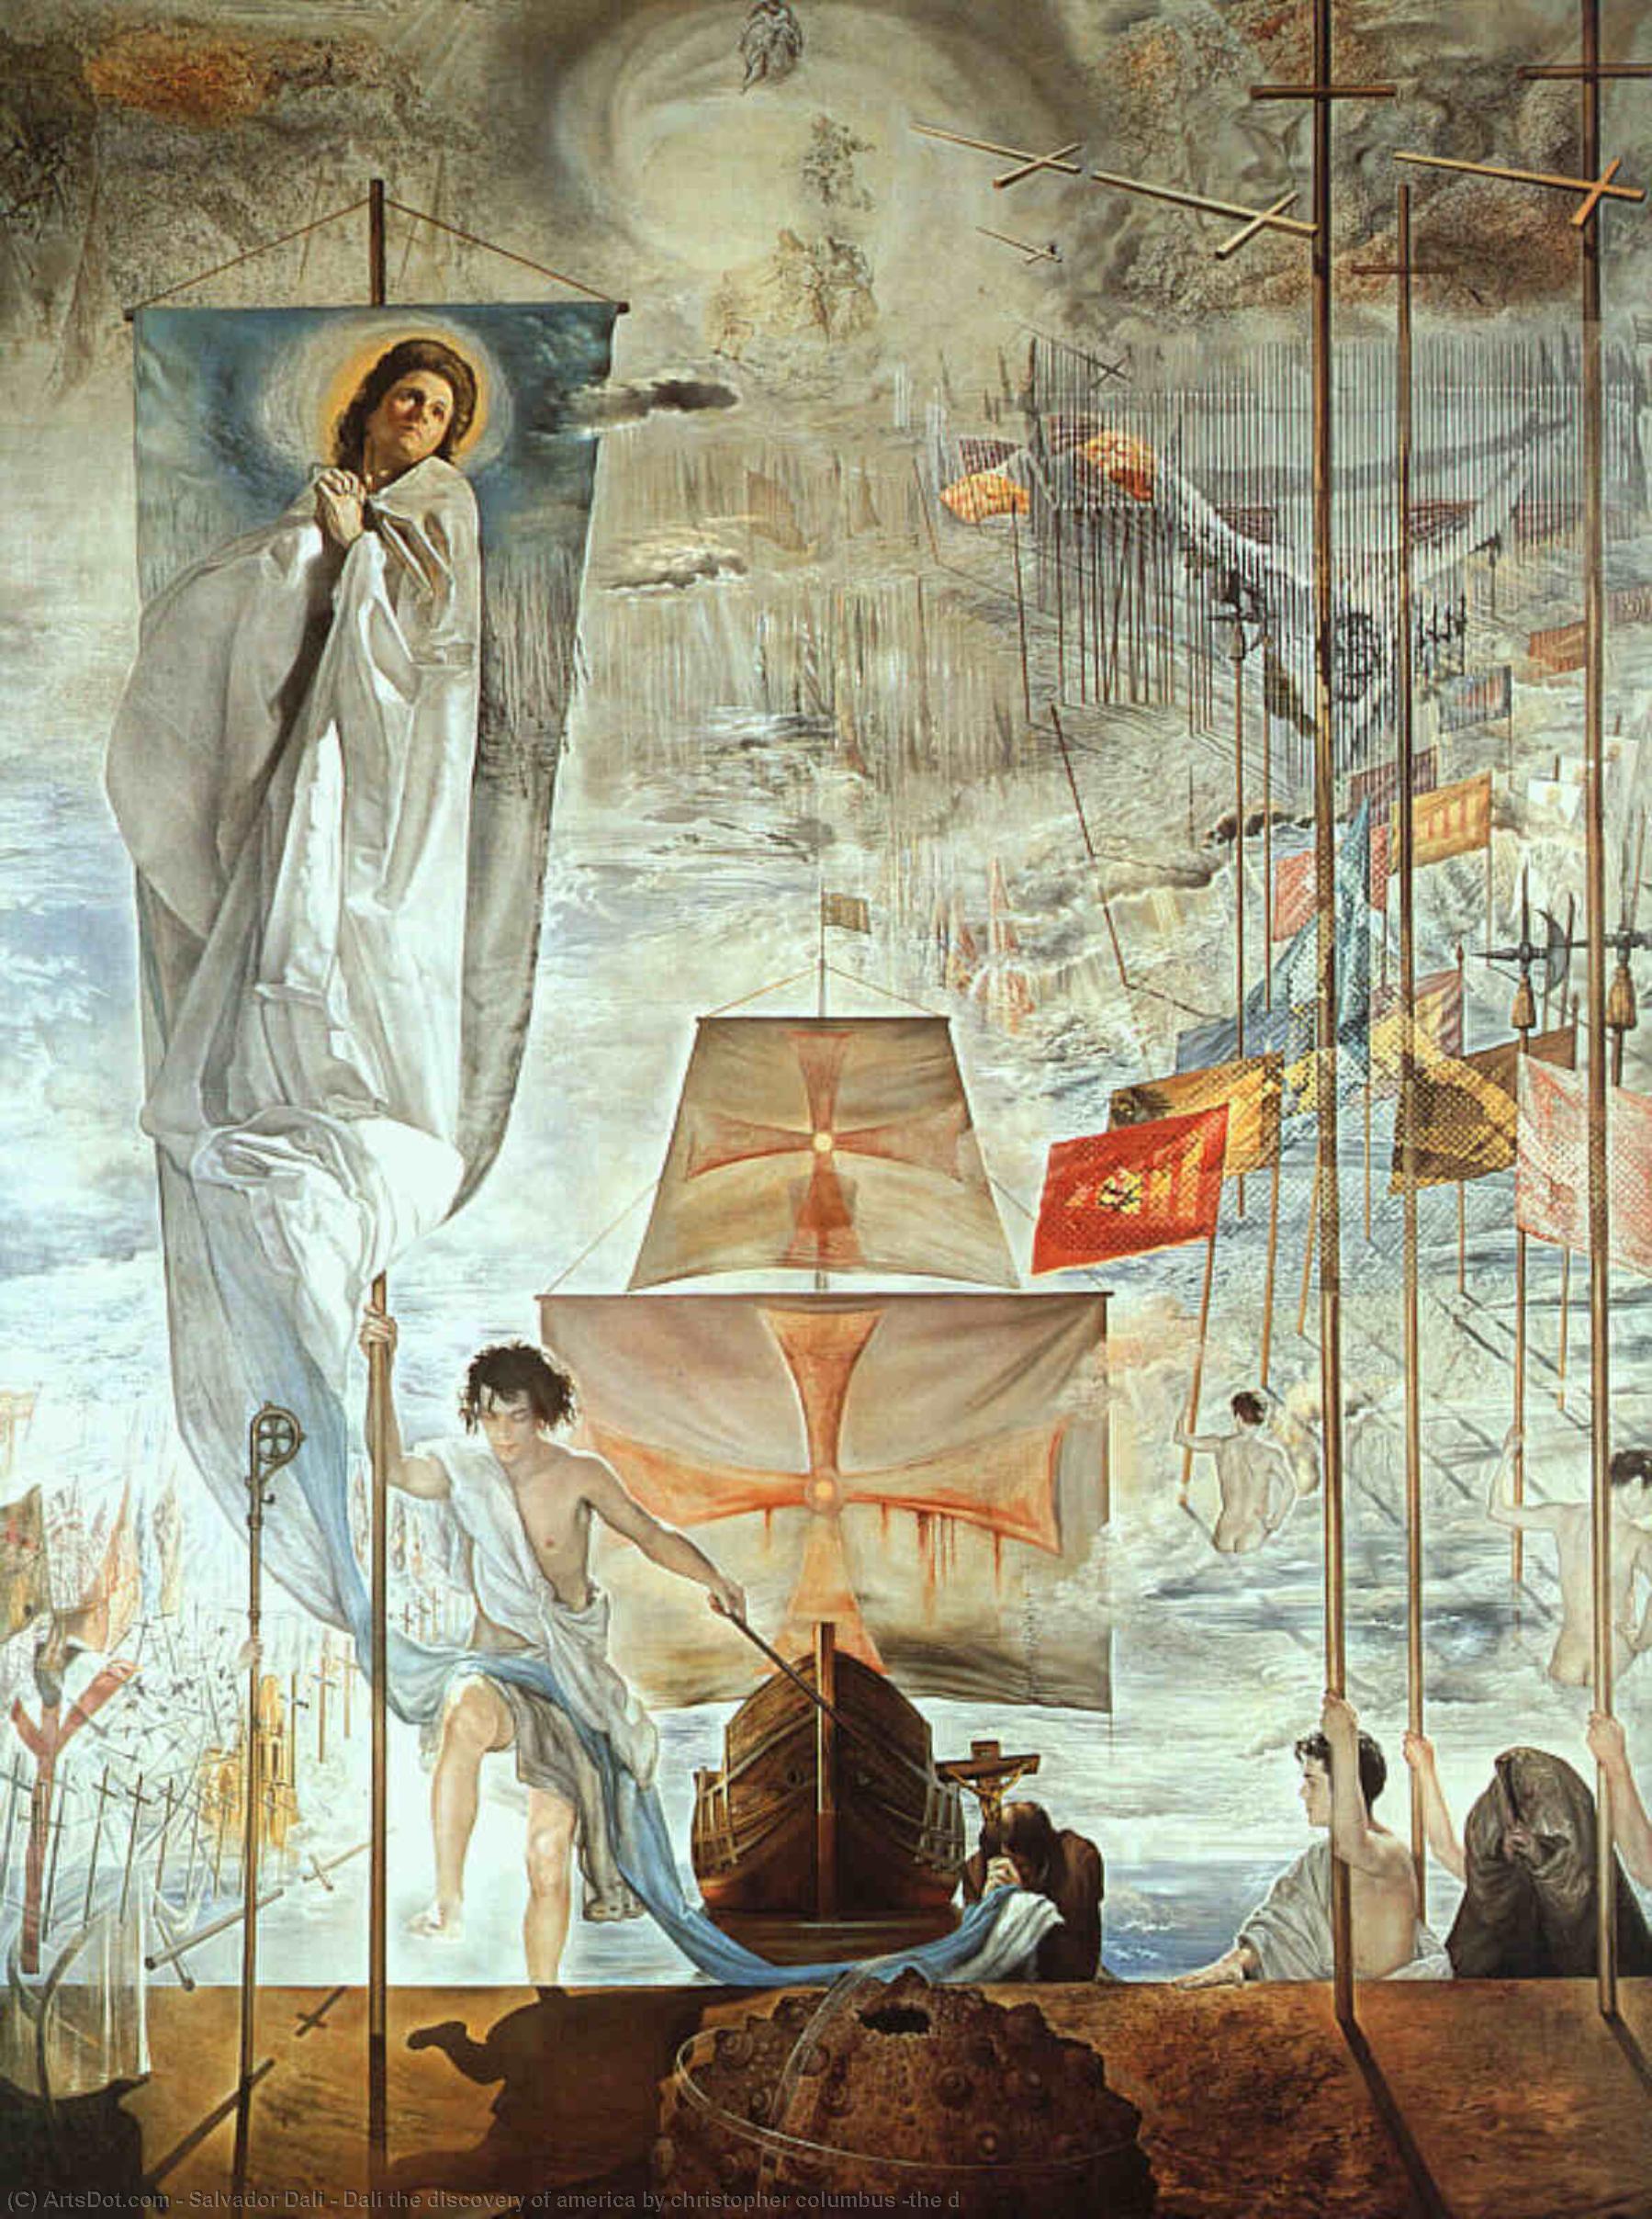 WikiOO.org - Enciklopedija dailės - Tapyba, meno kuriniai Salvador Dali - Dalí the discovery of america by christopher columbus (the d